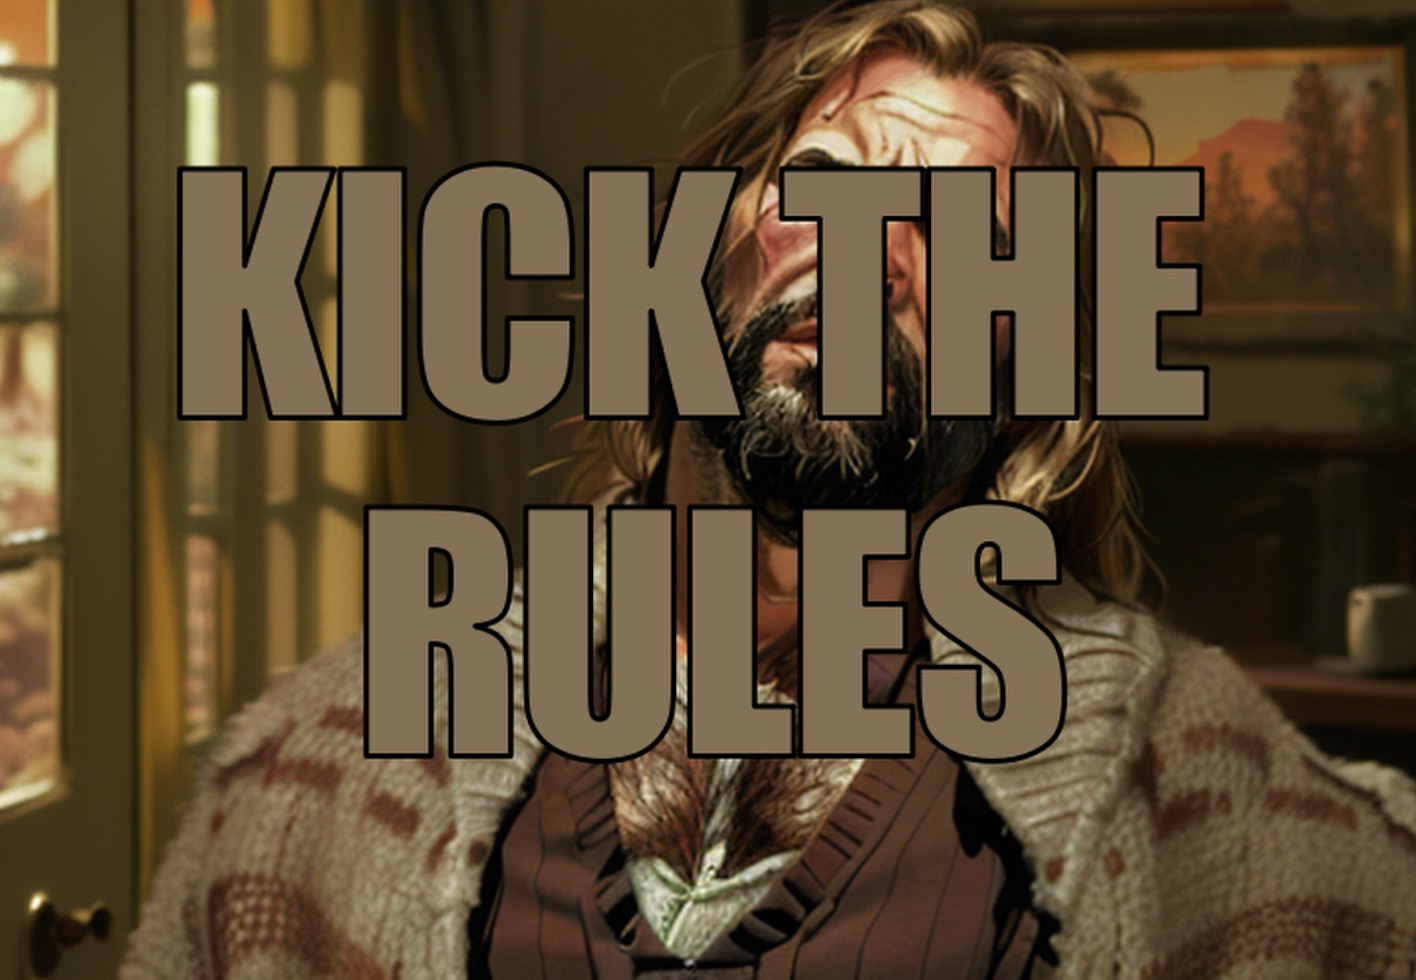 Kick the rules promo